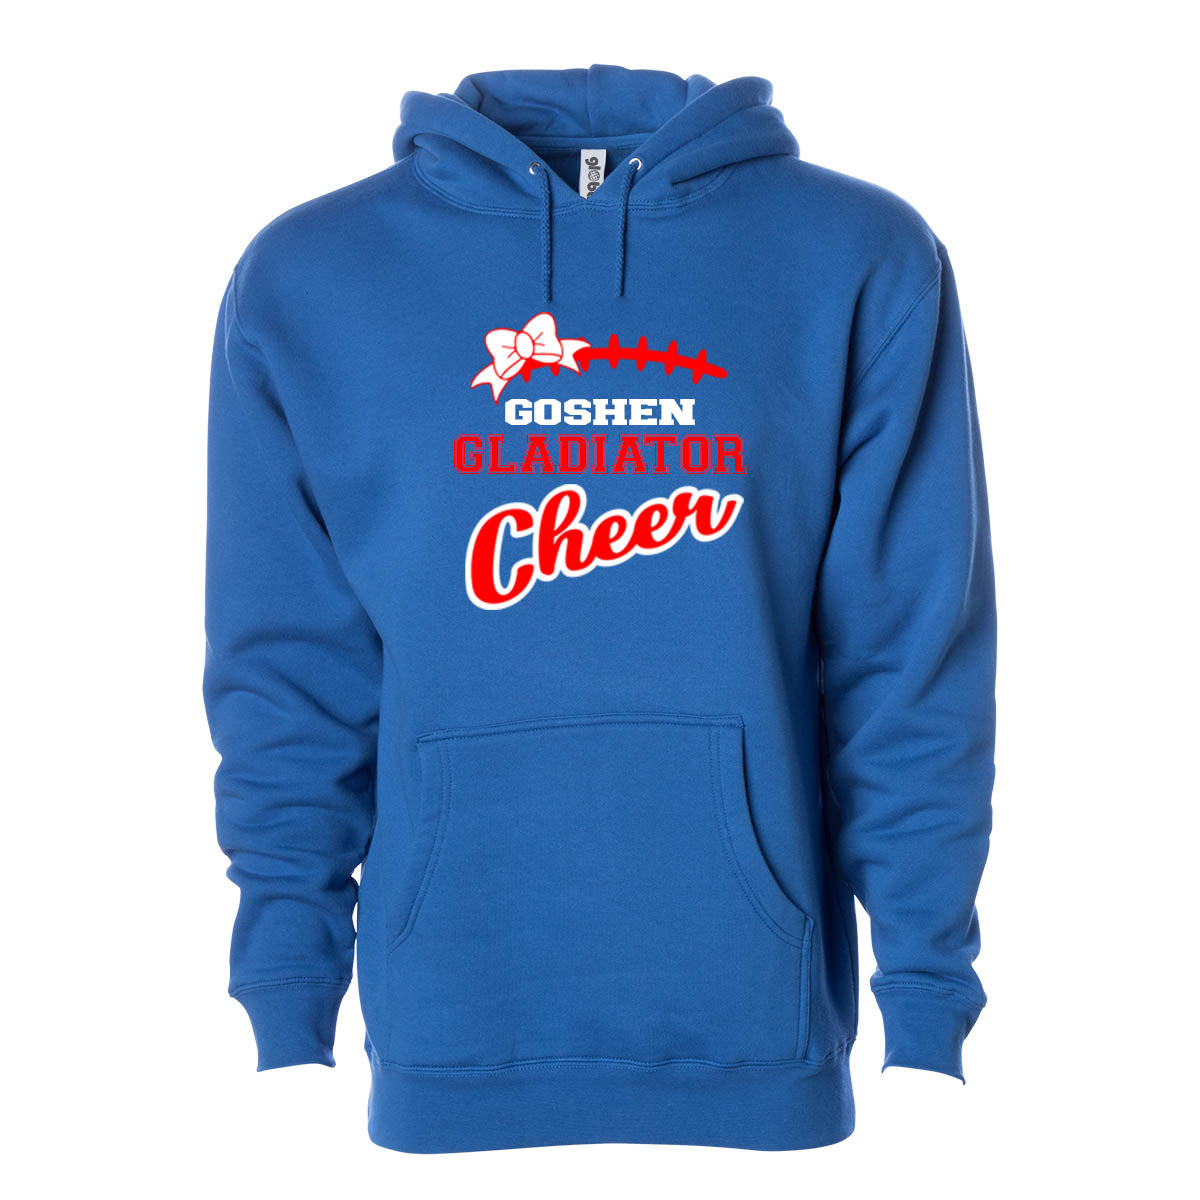 Goshen Cheer Design 13 Hooded Sweatshirt